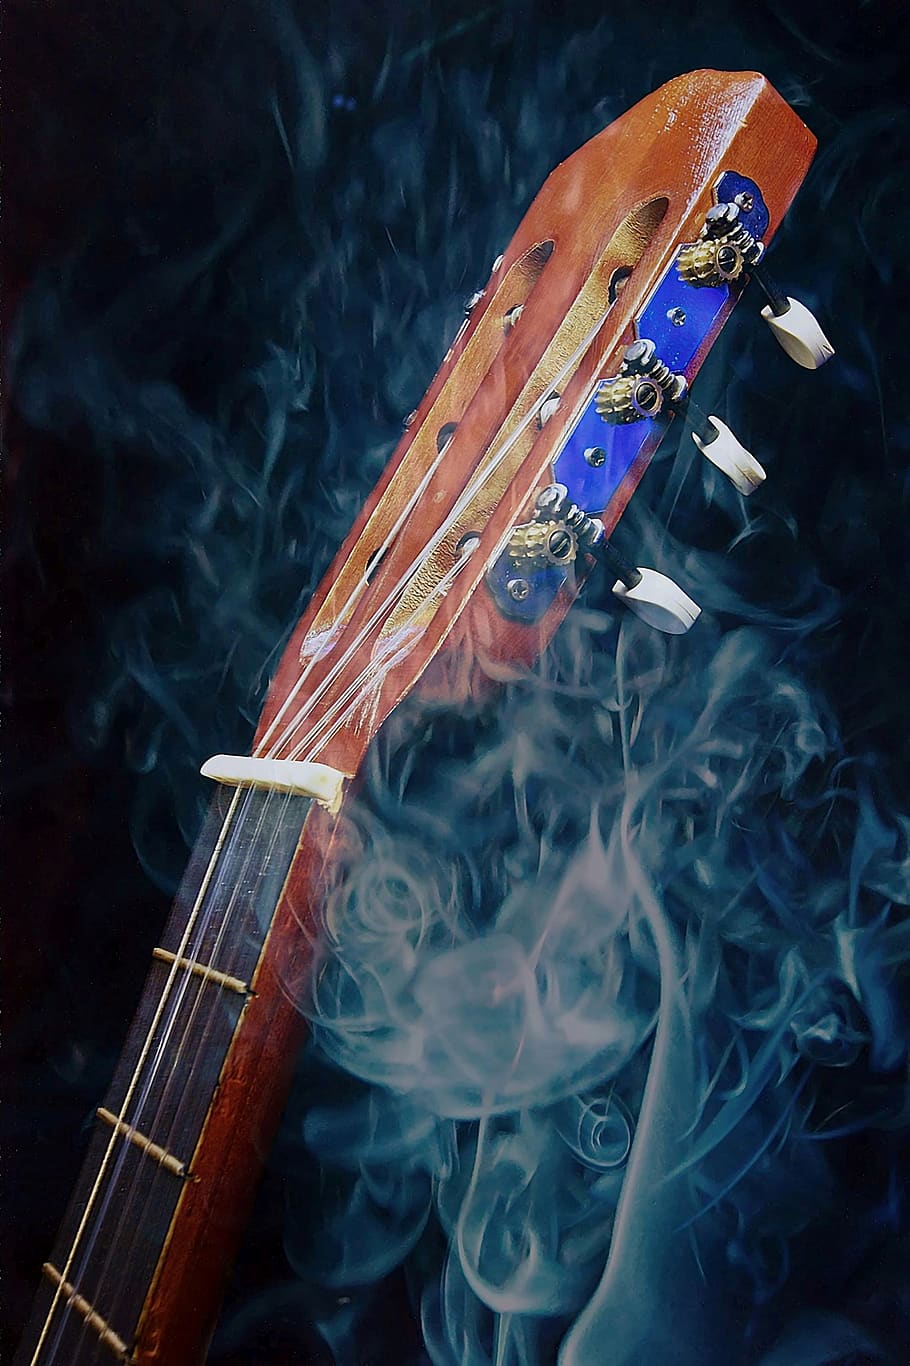 background, sound, music, smoke, art, stringed instrument, guitar, instrument, darkness, role